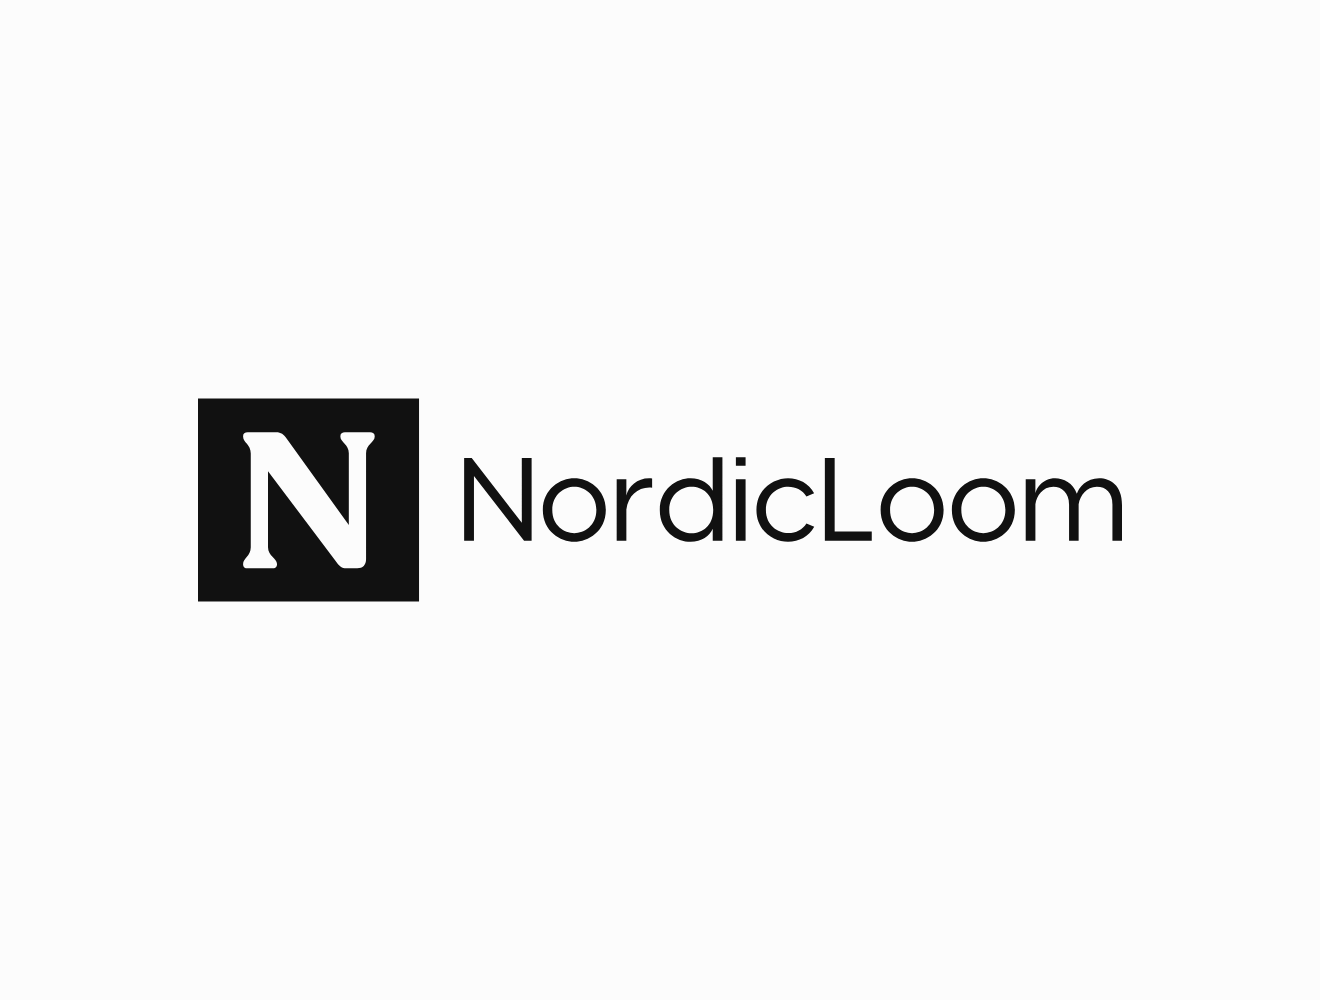 NordicLoom